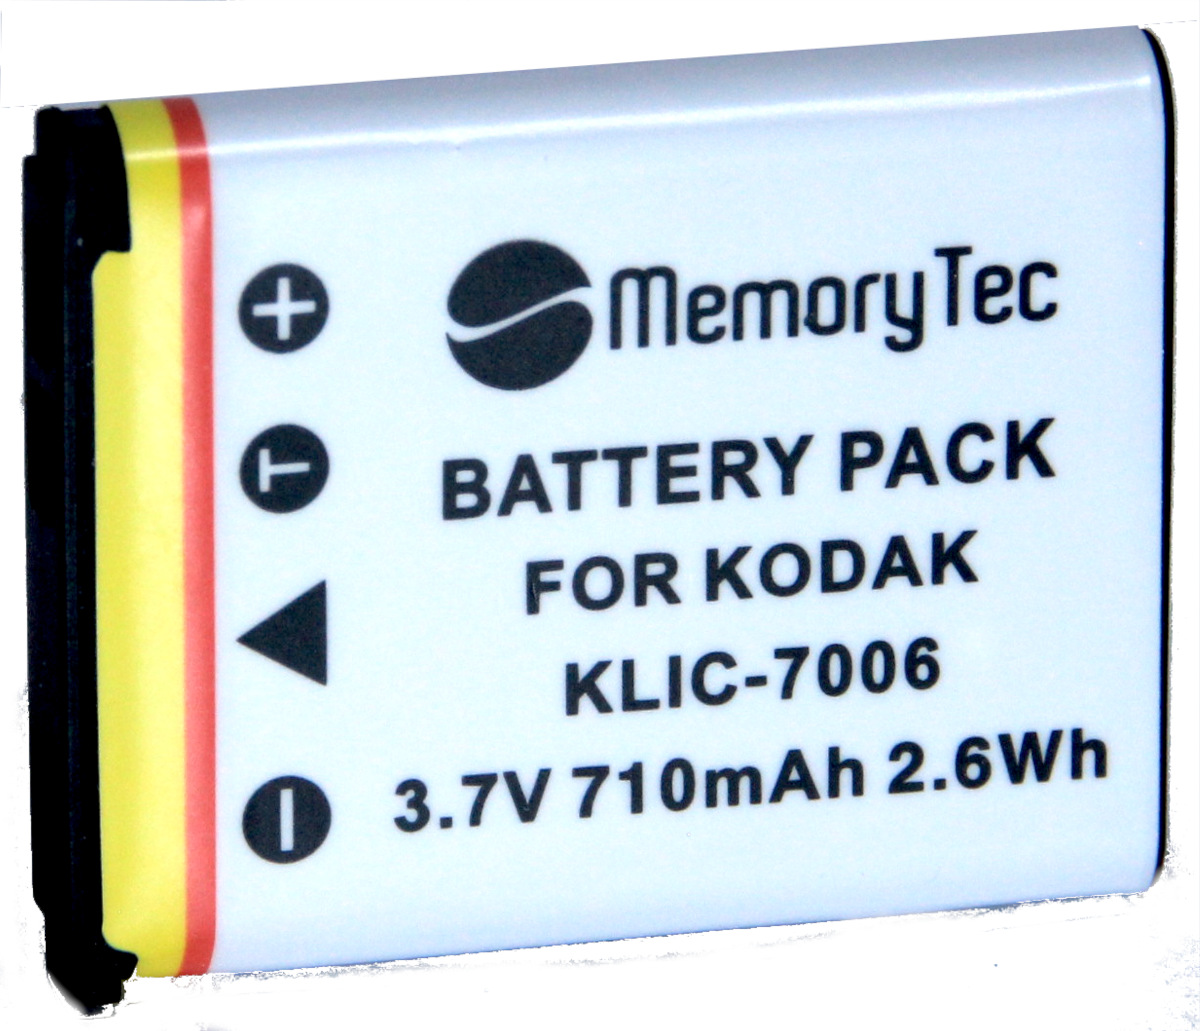 Bateria Compatível com Kodak Klic-7006 para cameras EasyShare M773, M873, M883 e outras